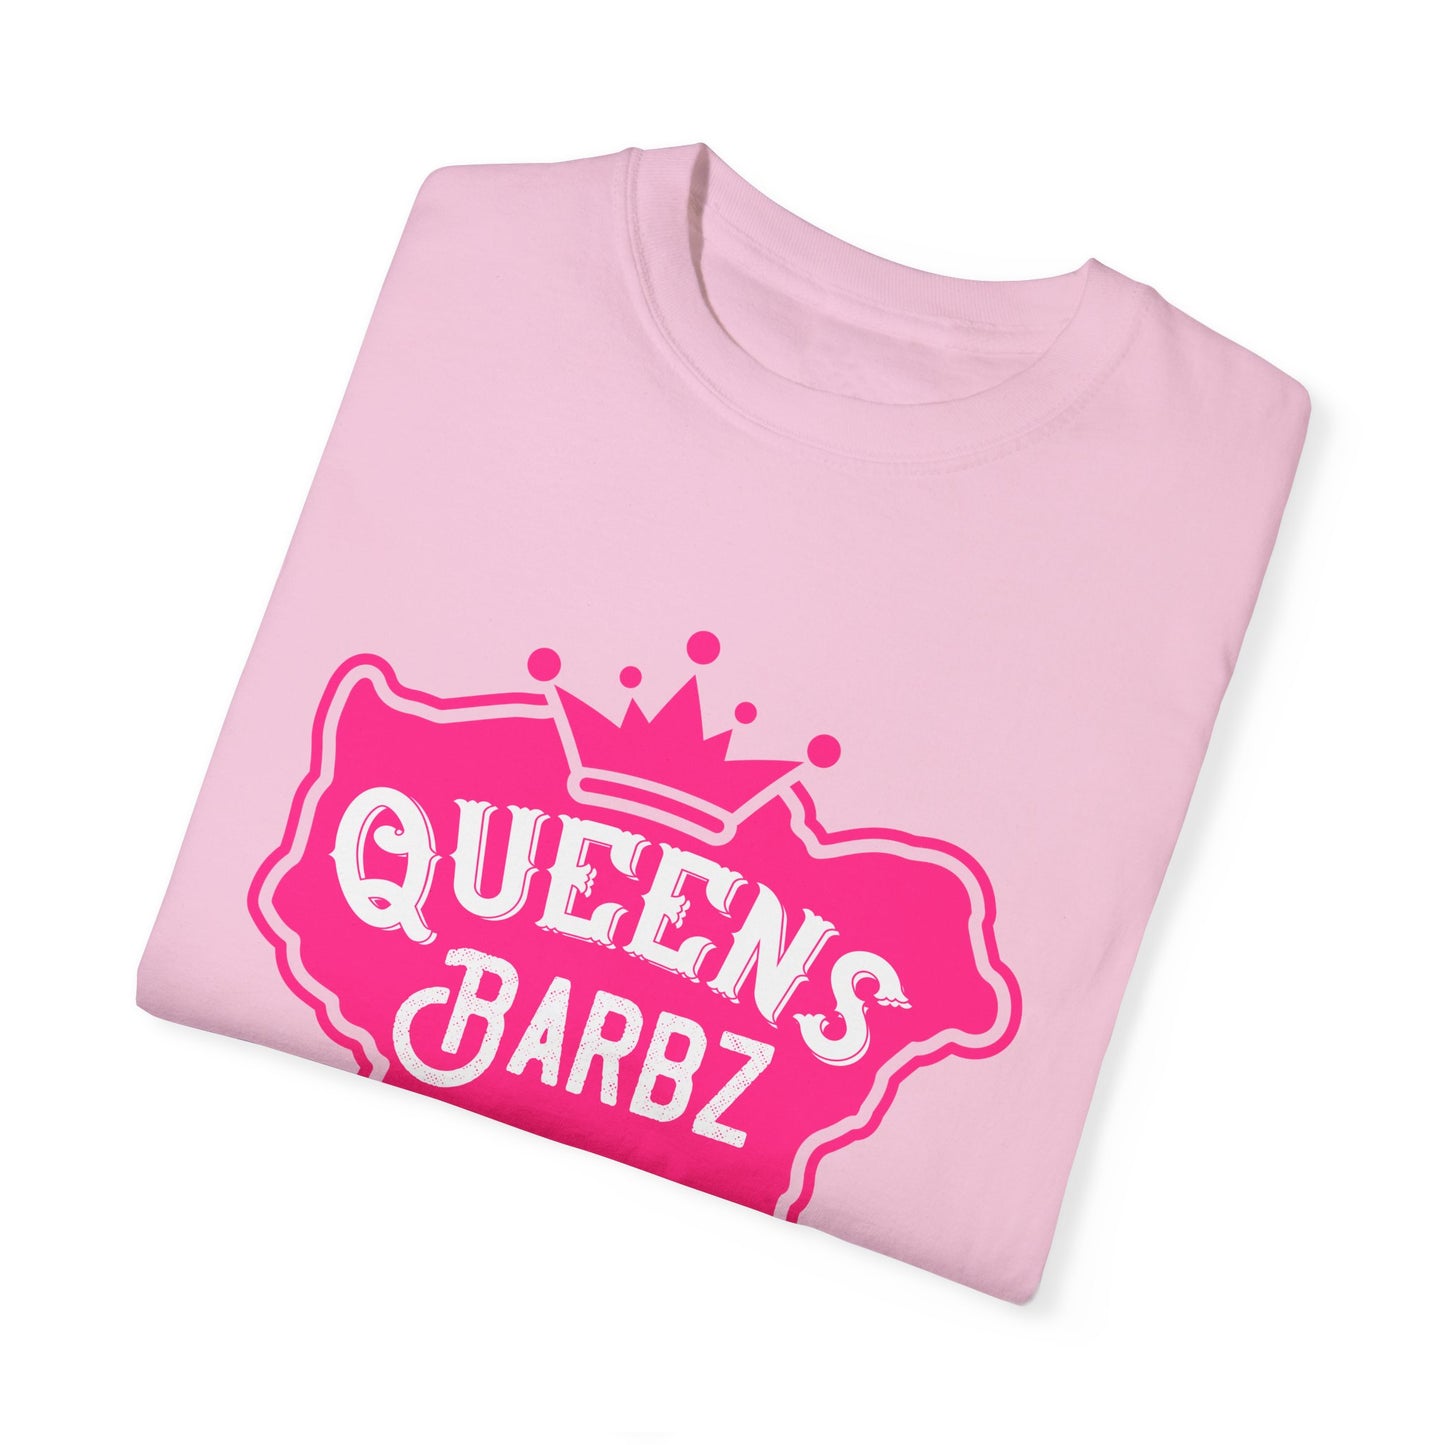 Queens Barbz T-shirt